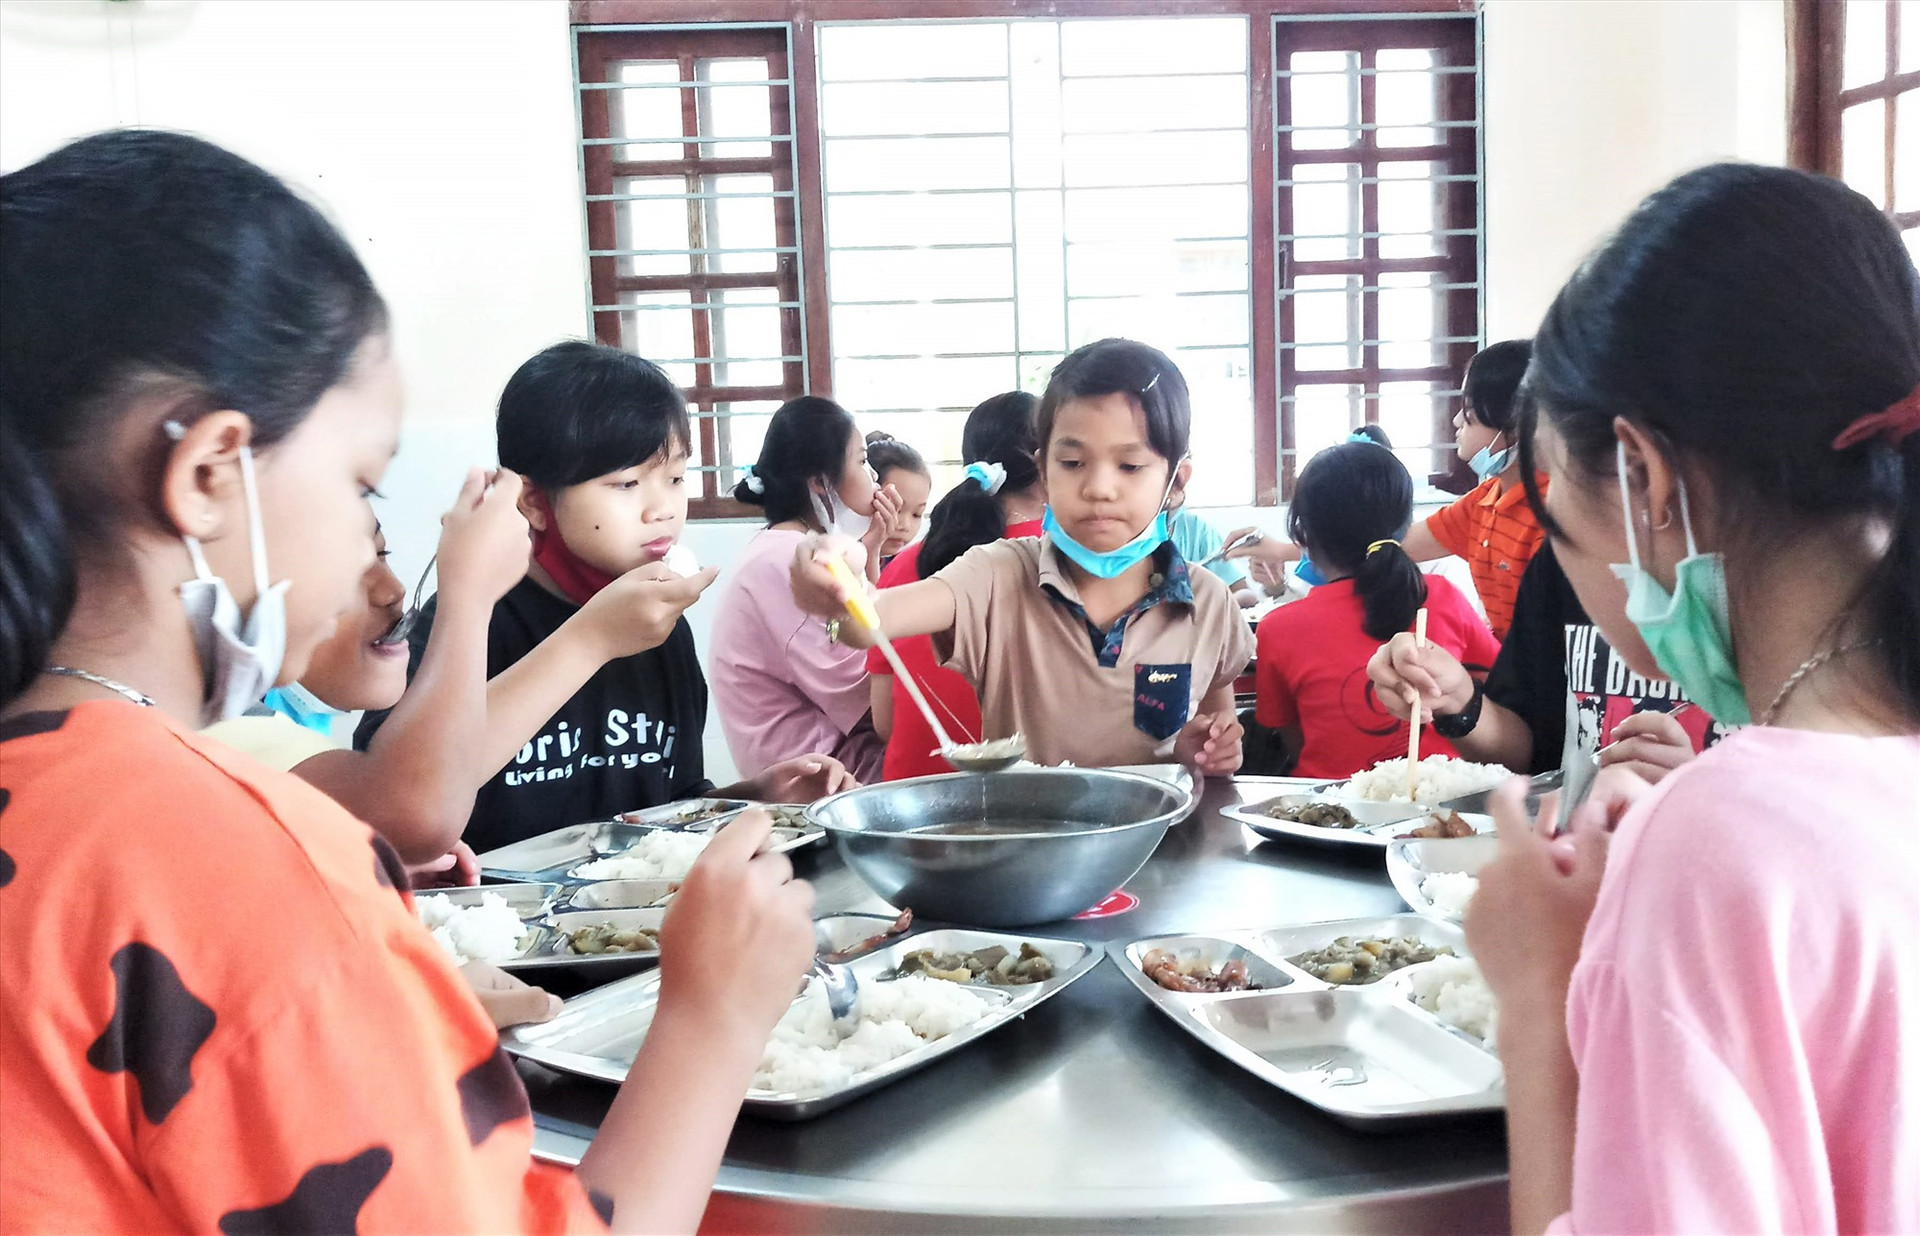 Chính sách hỗ trợ của Nhà nước giúp học sinh miền núi có thêm điều kiện ăn ở, học tập theo mô hình nội trú. Ảnh: ALĂNG NGƯỚC